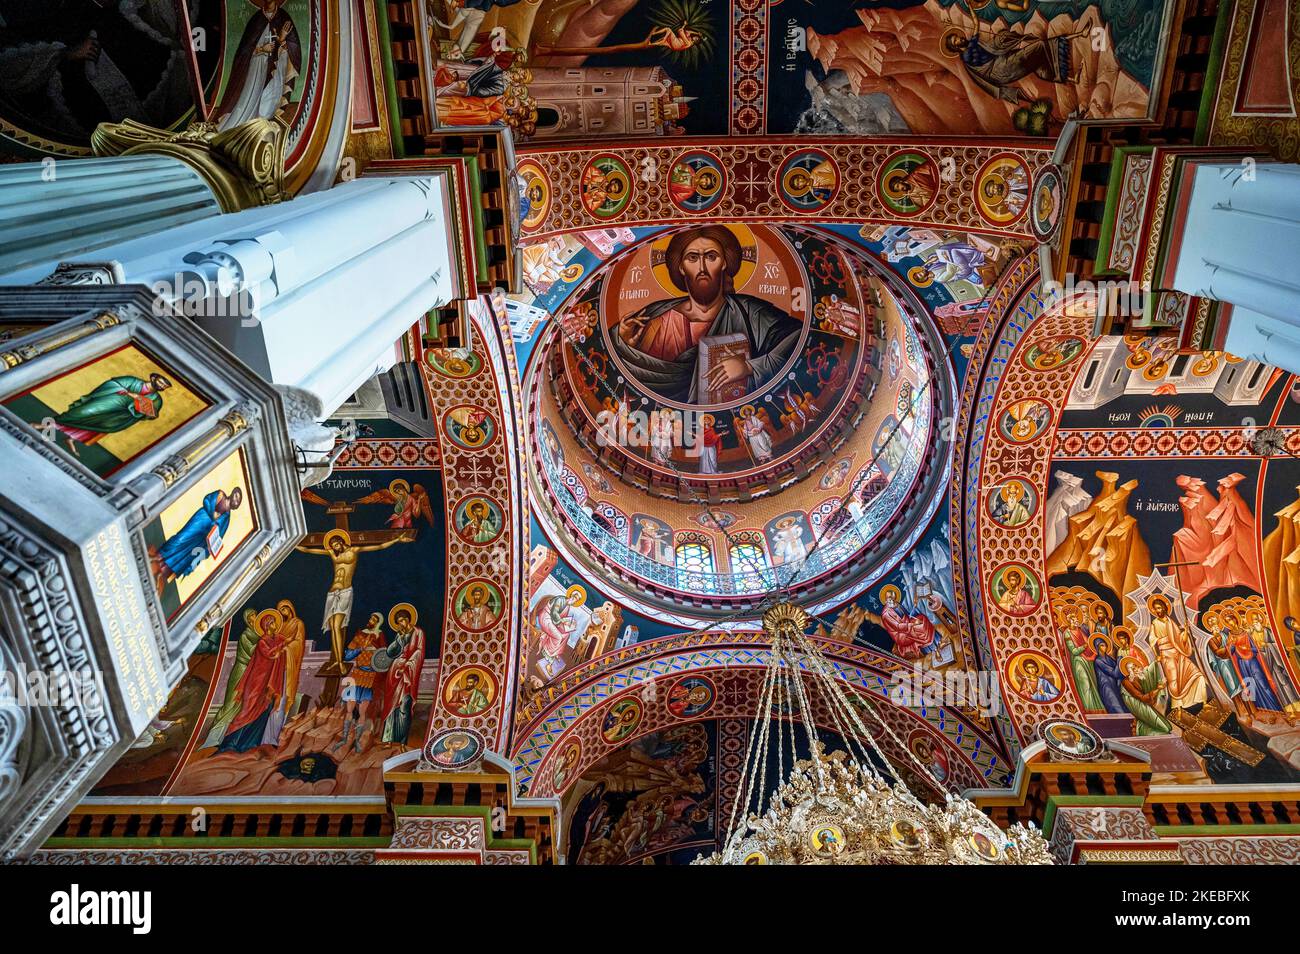 Magnifique tableau monumental dans la coupole de la cathédrale d'Agios Minas, Héraklion, Crète, Grèce. Banque D'Images